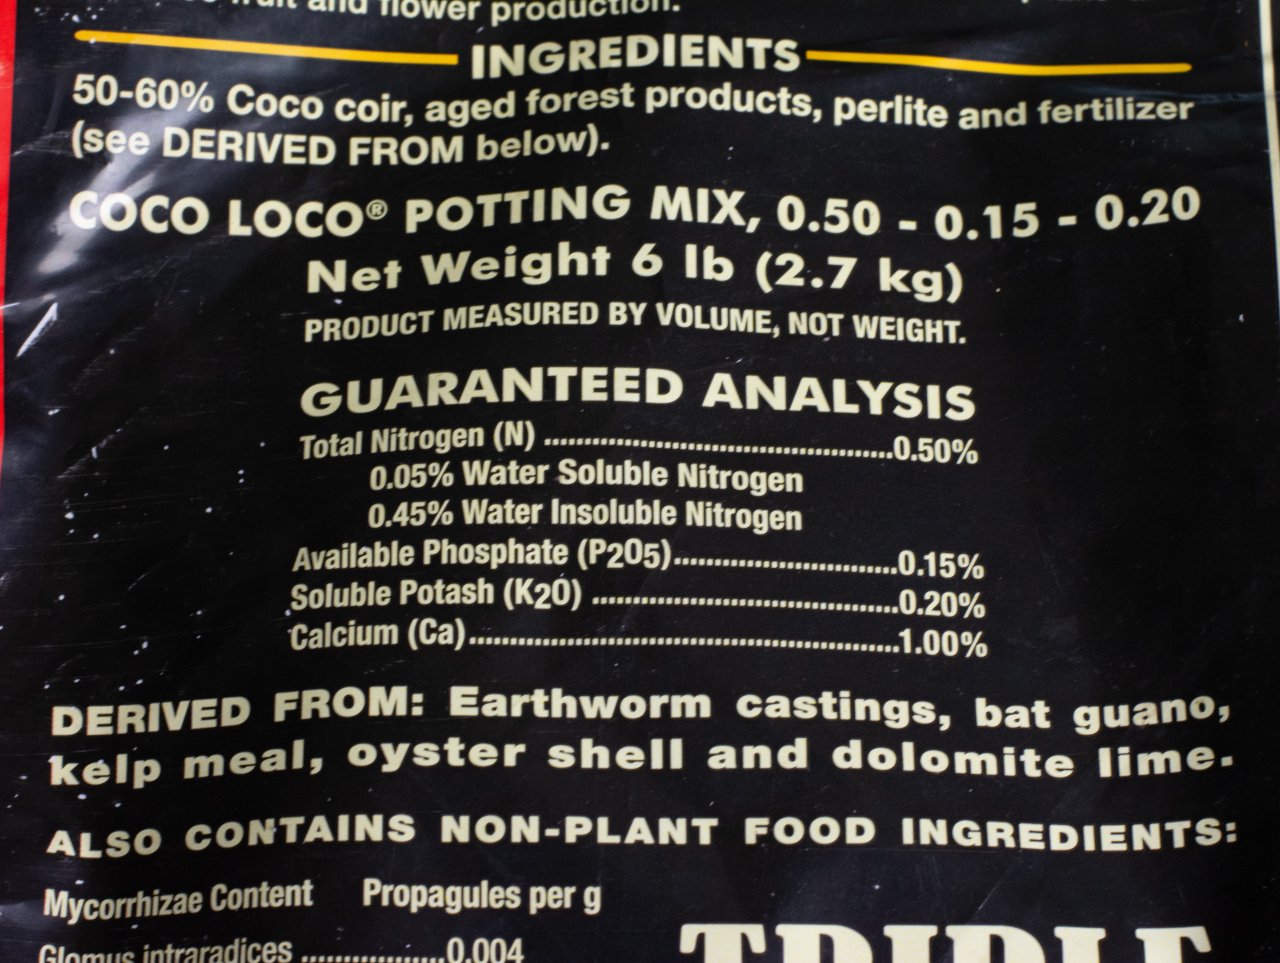 Coco-loco ingredients.jpg